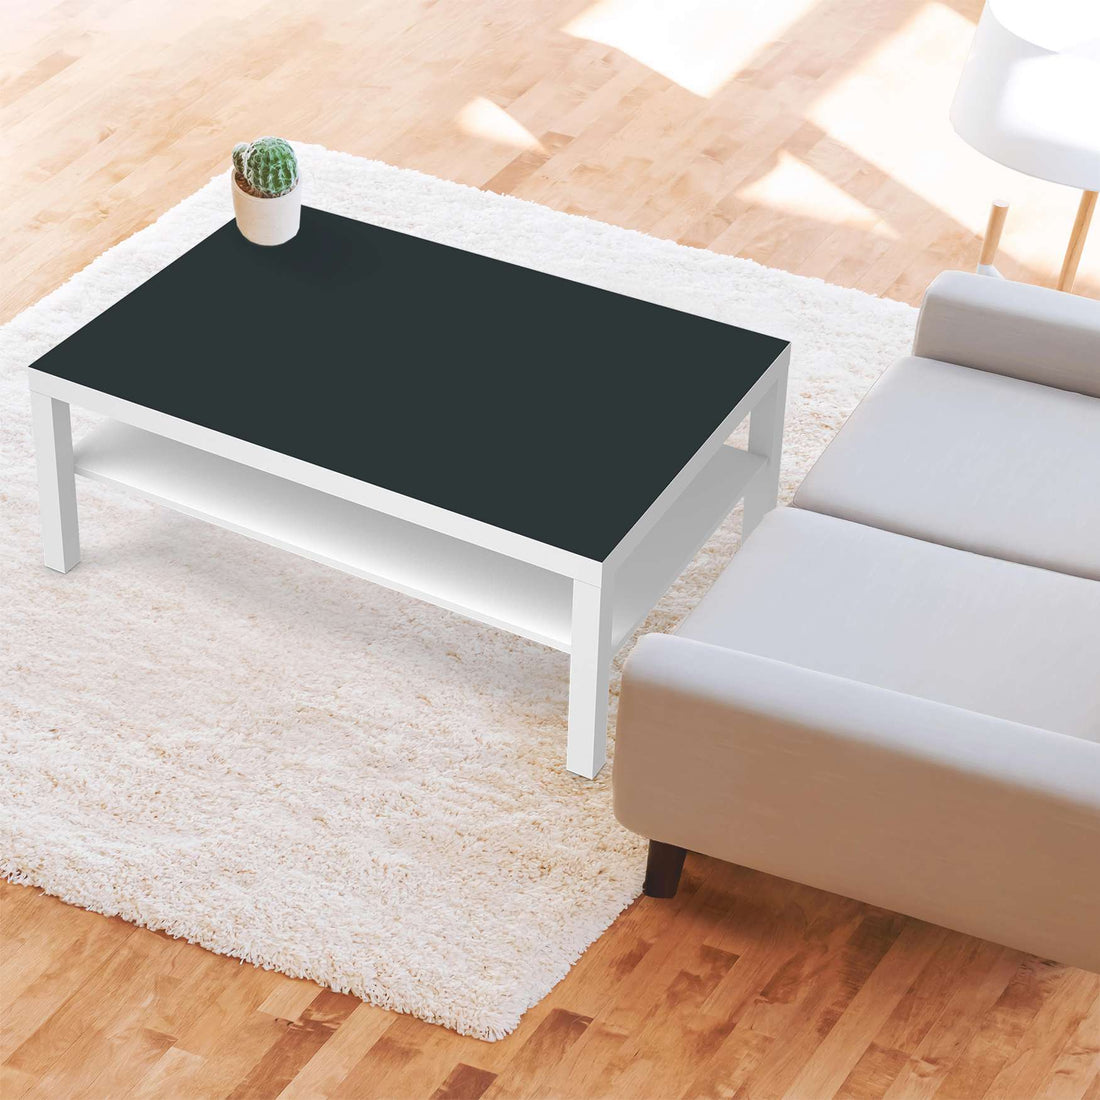 Klebefolie Blaugrau Dark - IKEA Lack Tisch 118x78 cm - Wohnzimmer